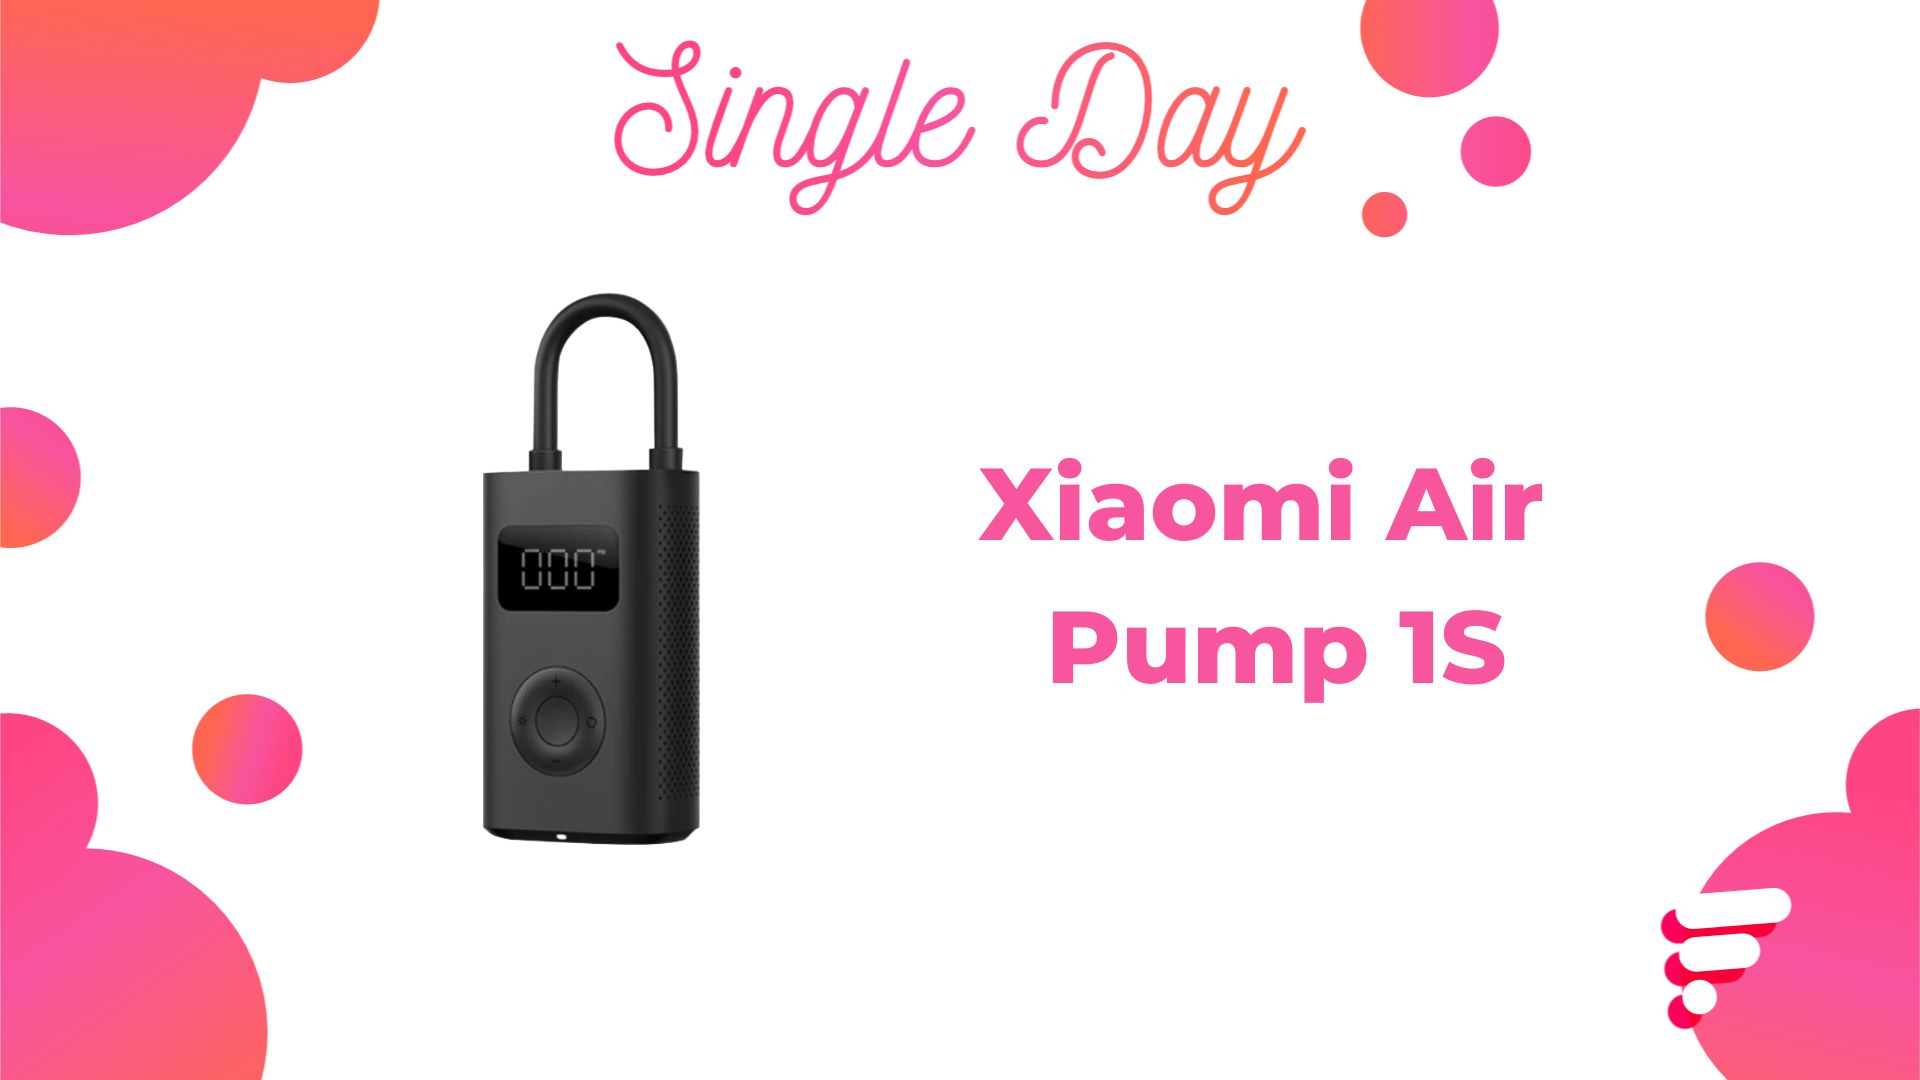 Acheter Xiaomi Mi Portable Air Pump 1S - gonfleur électrique